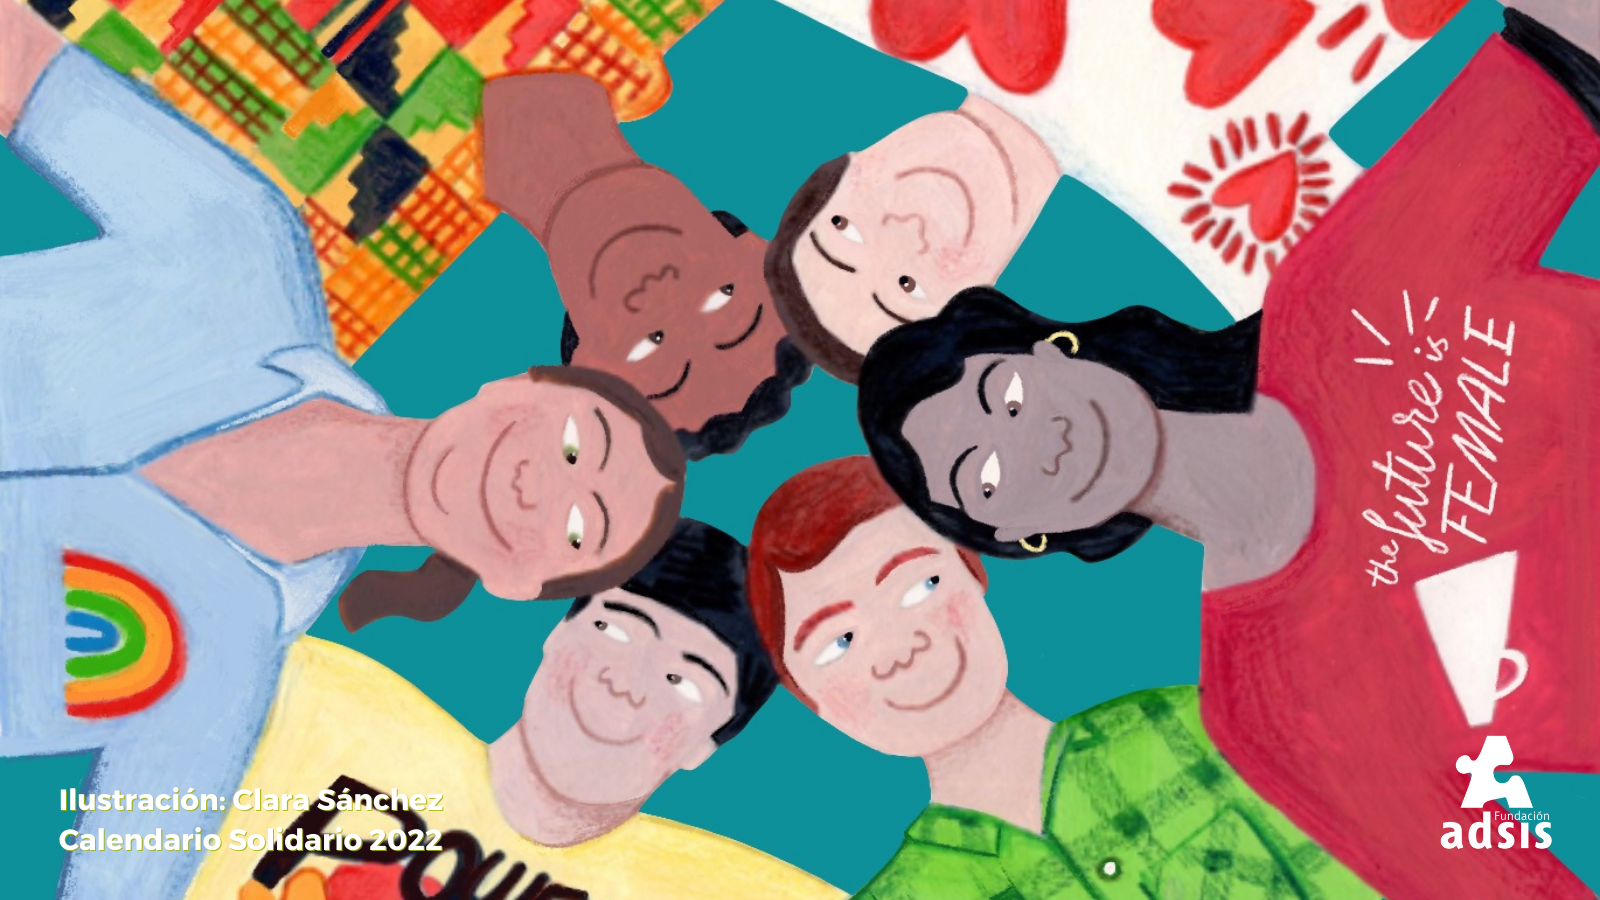 Ilustración donde se ven las caras de diversas personas unidas en círculo